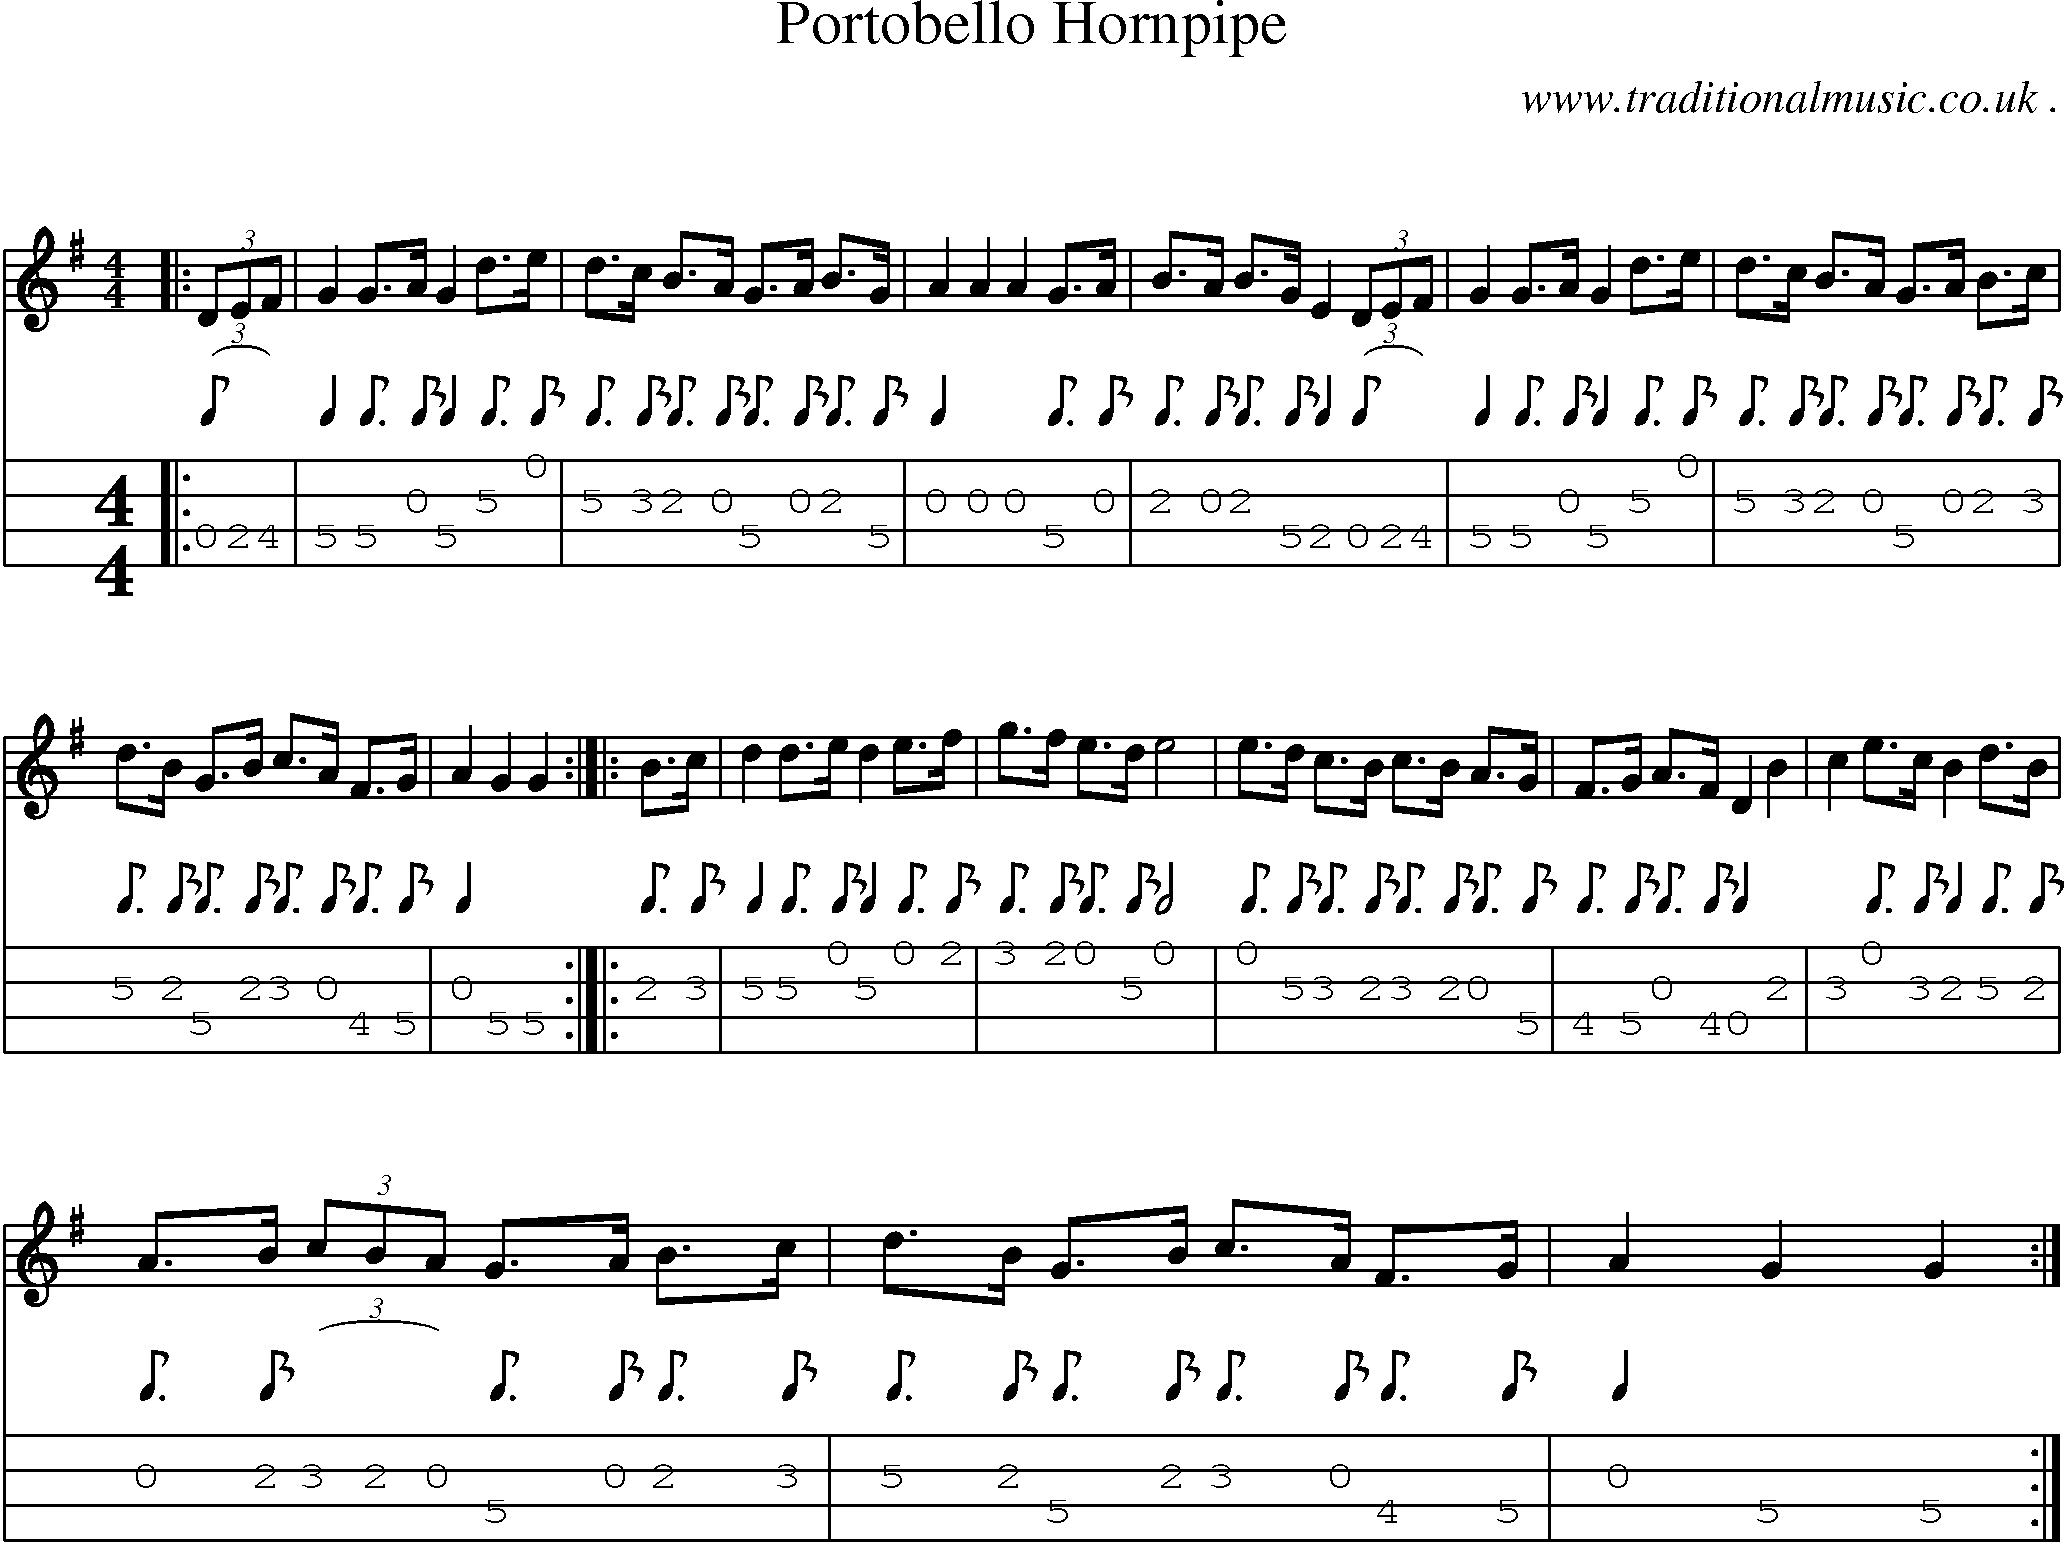 Sheet-Music and Mandolin Tabs for Portobello Hornpipe